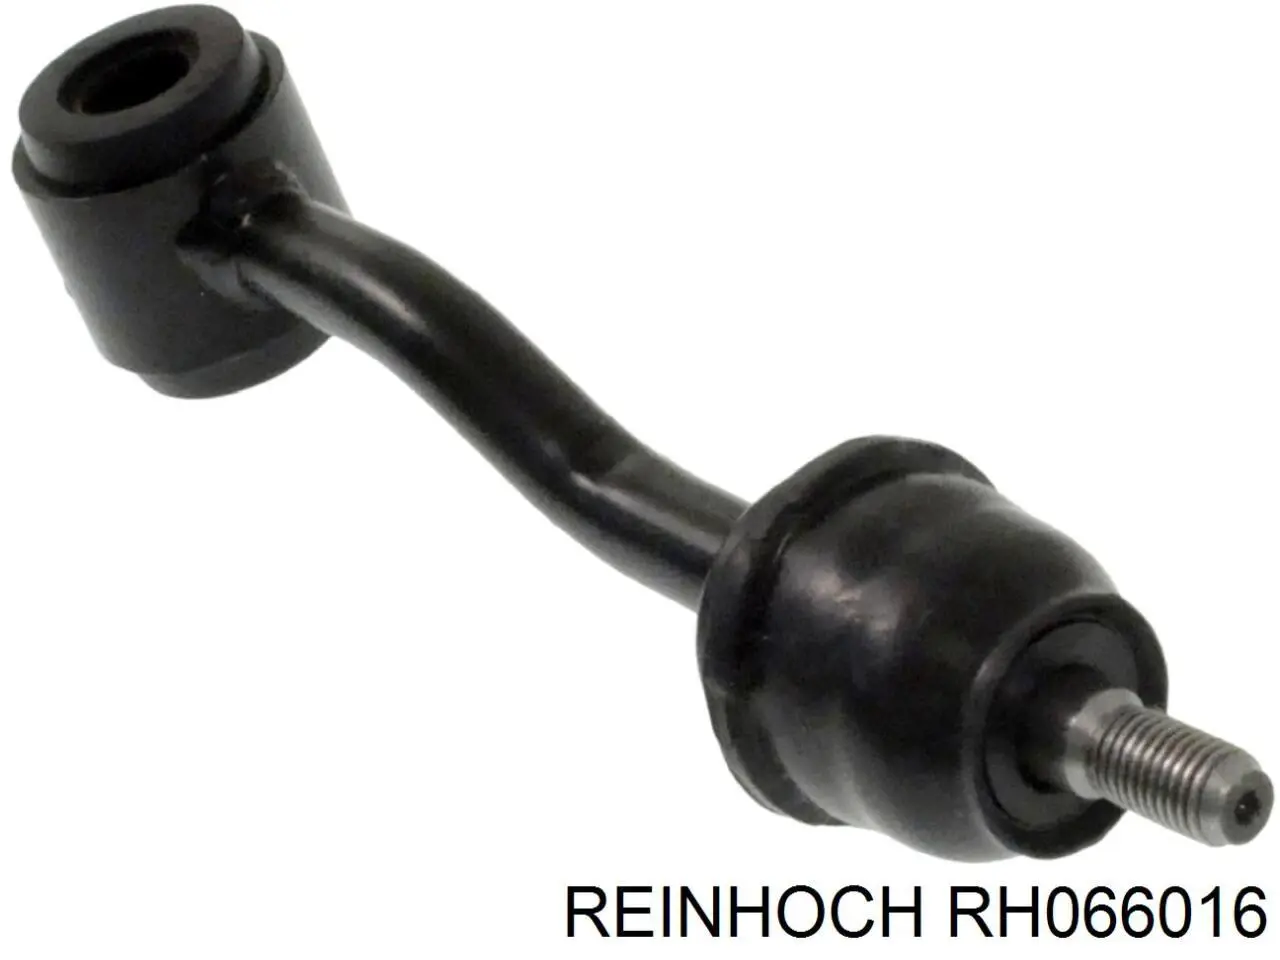 RH066016 Reinhoch soporte de barra estabilizadora delantera